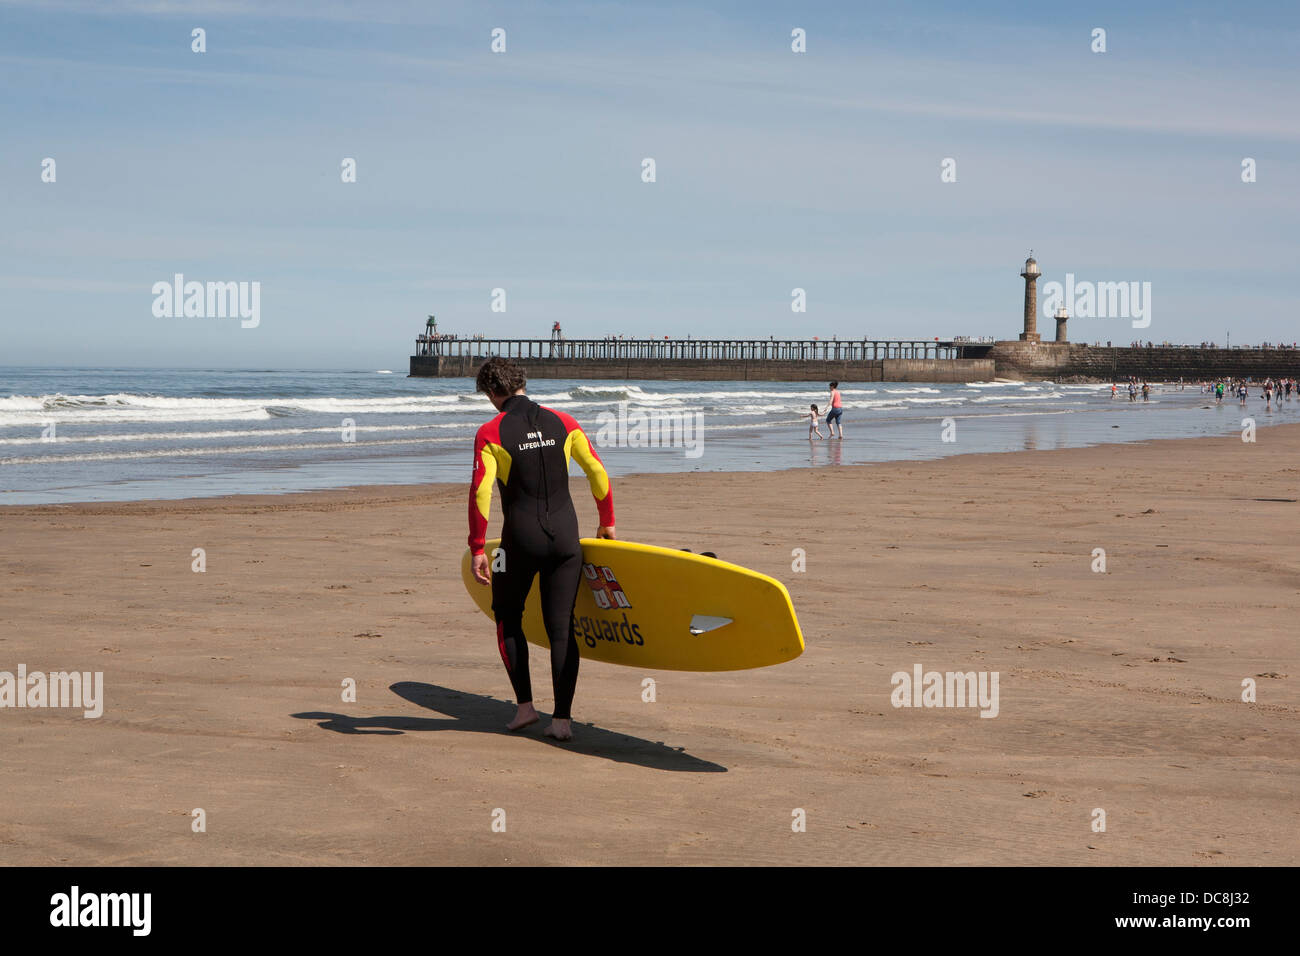 Un sauveteur RNLI en travers de la plage de sable vers la mer avec une planche de surf sous le bras, Whitby, dans le Yorkshire. Banque D'Images